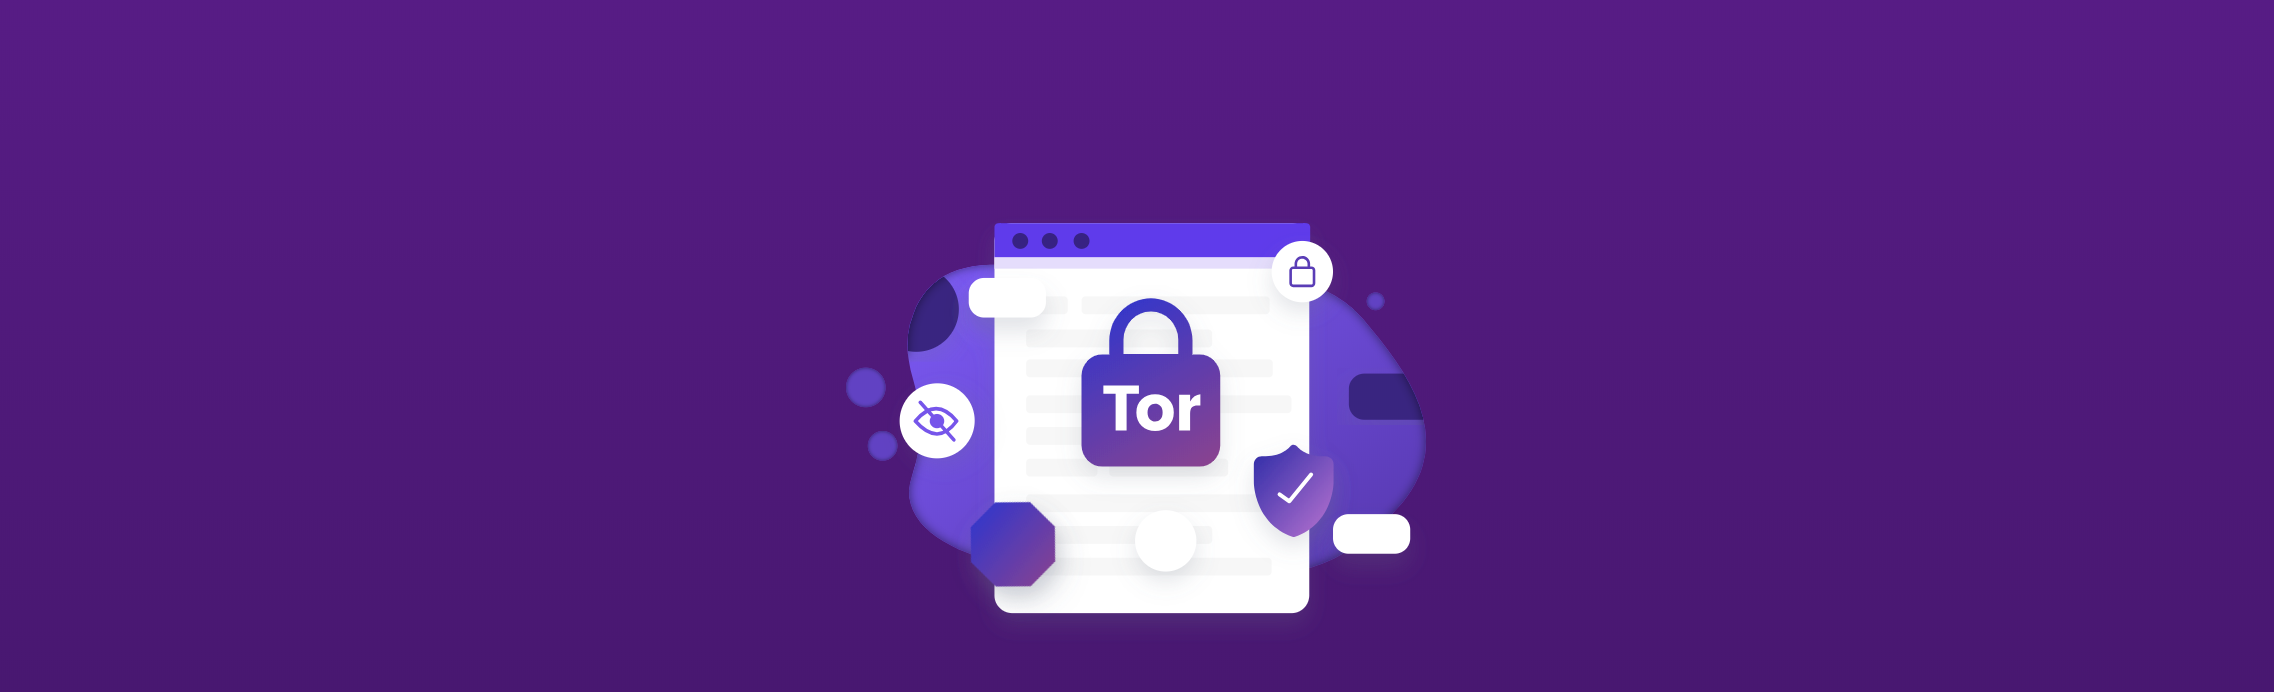 tor browser официального сайта mega